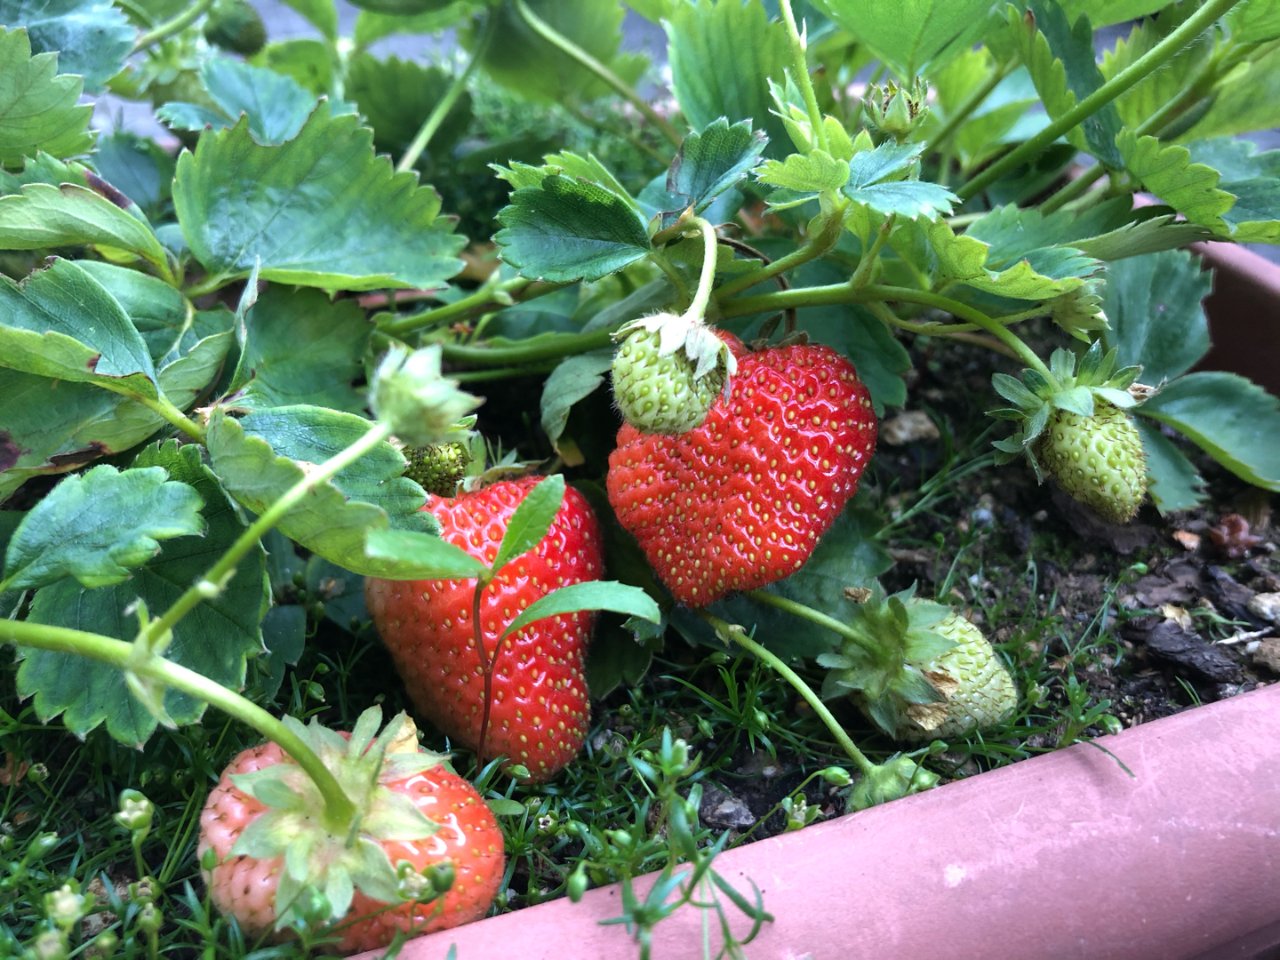 邻居家的草莓🍓...